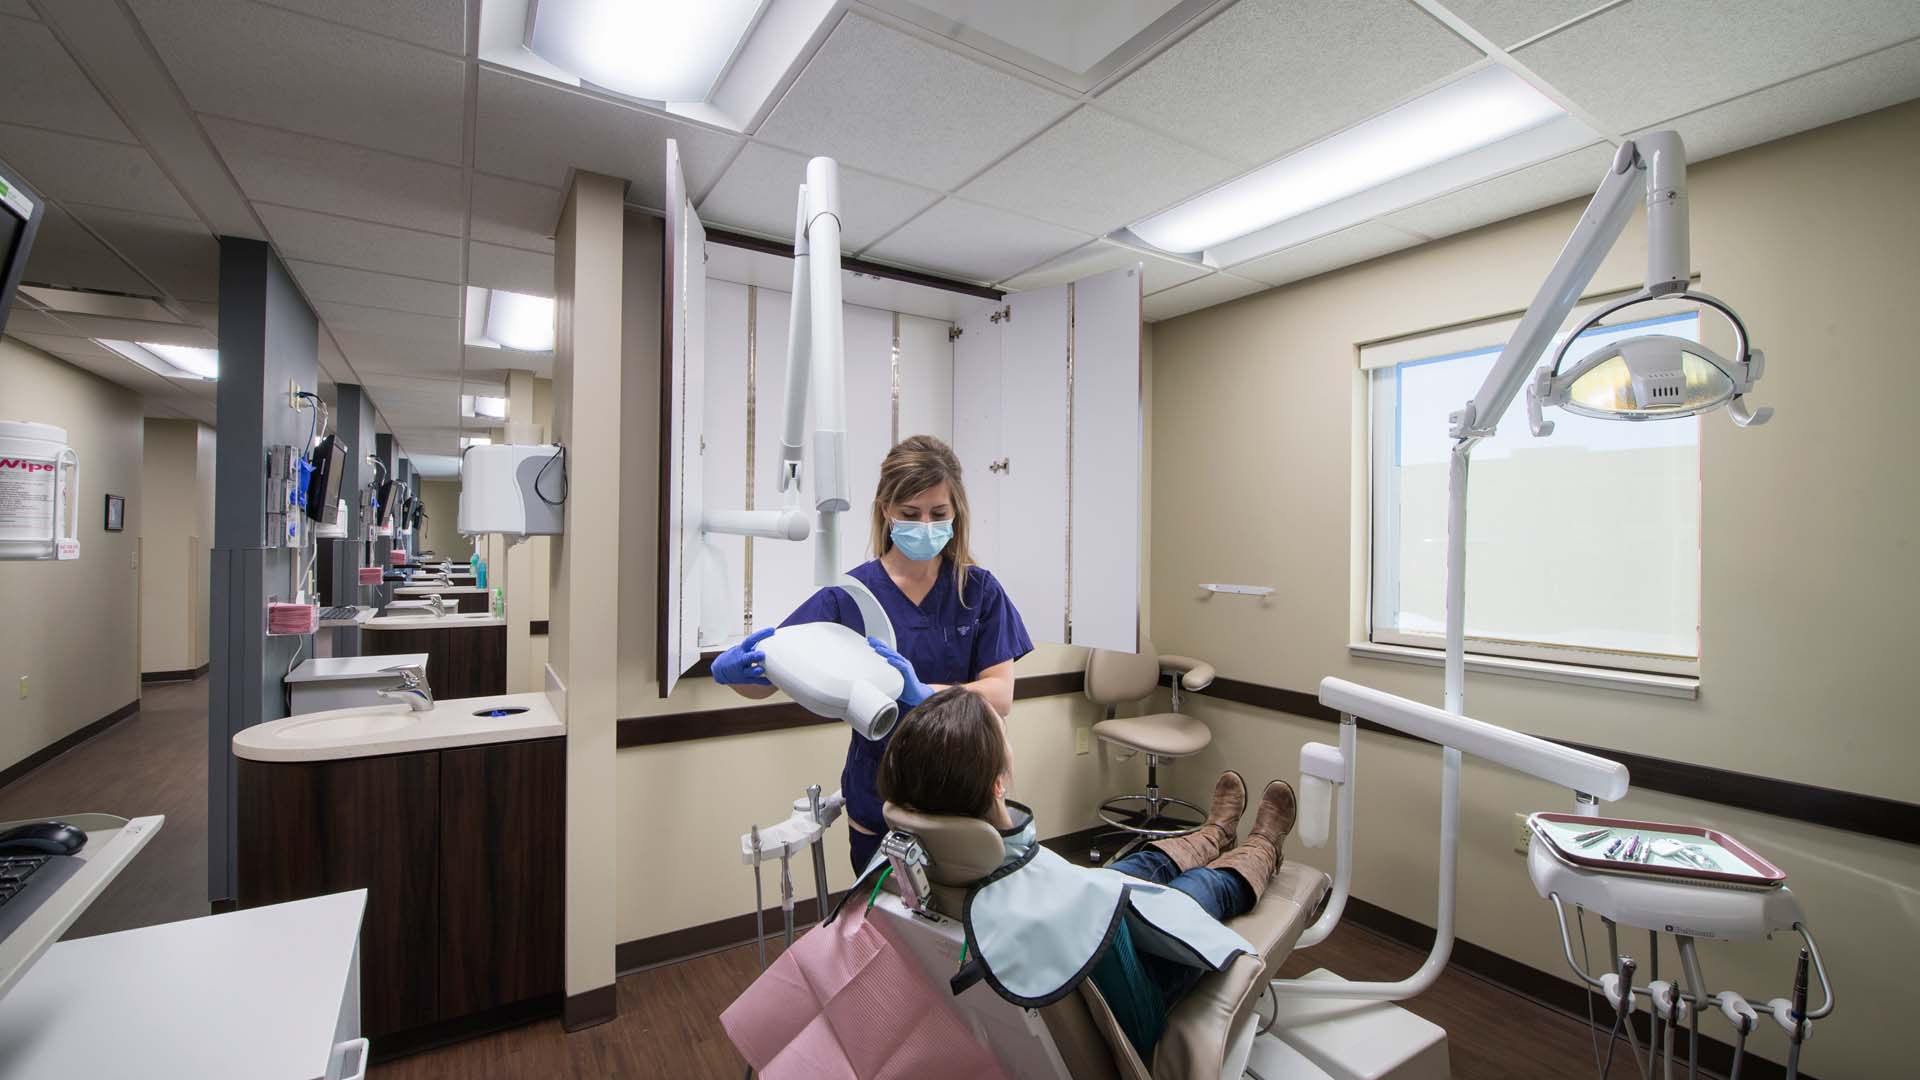 Van Wert County Hospital Dental Clinic Patient Room